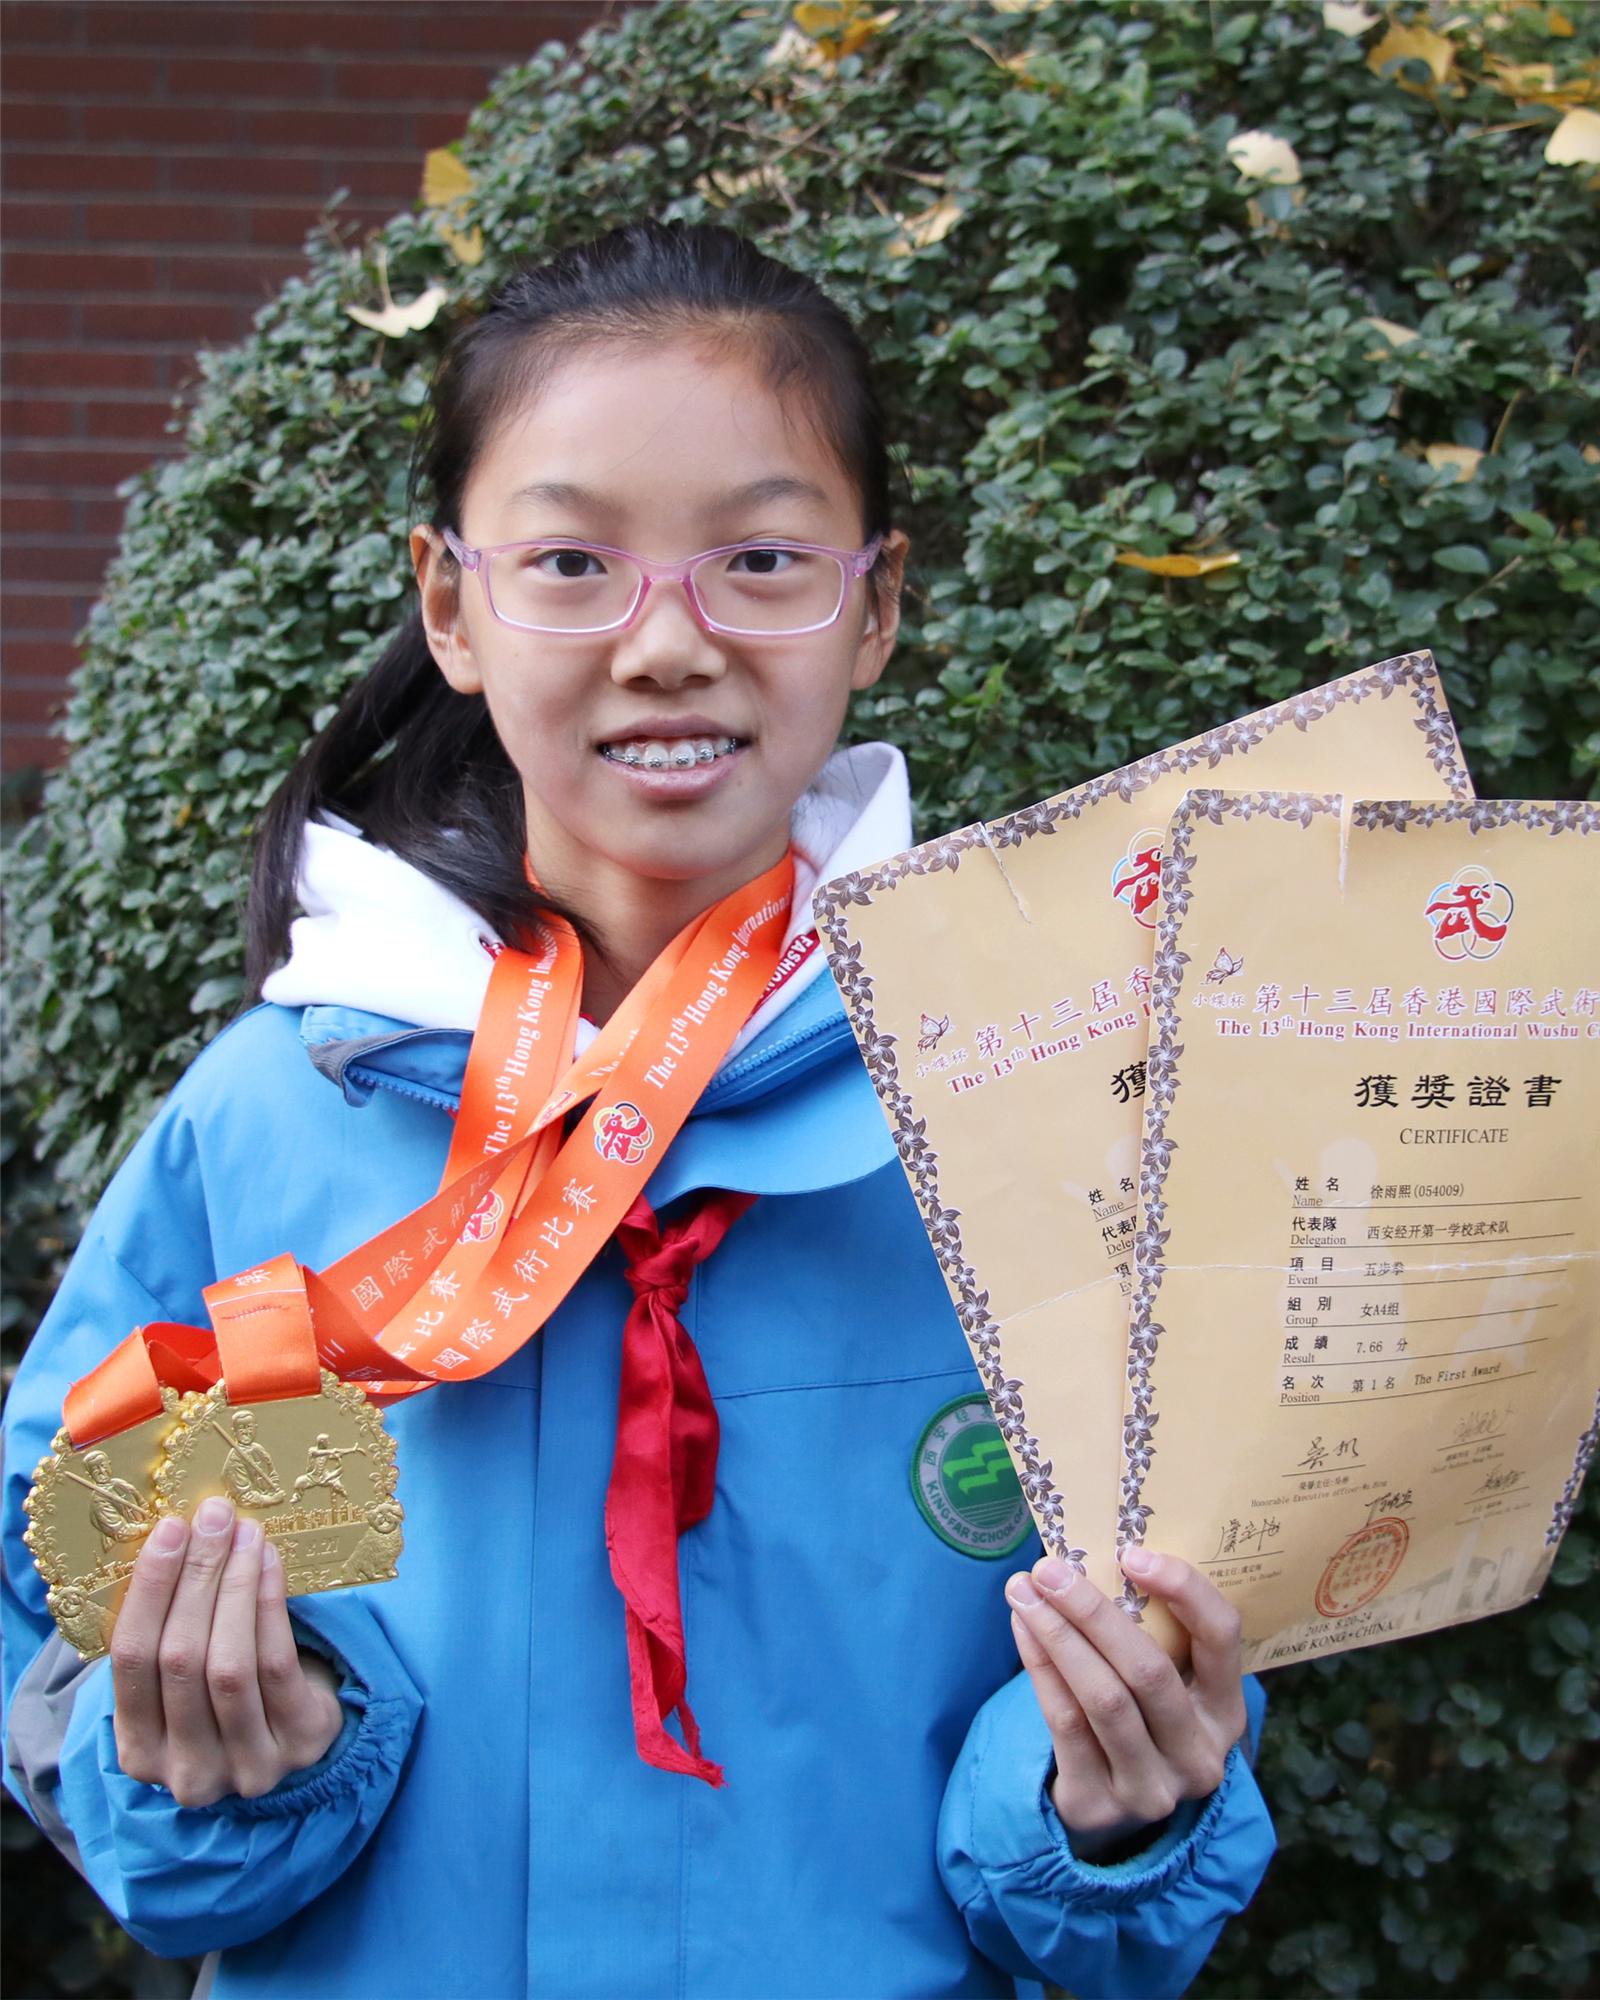 五年级七班 徐雨熙 第十三届香港国际武术比赛五步拳女A4组第一名.jpg